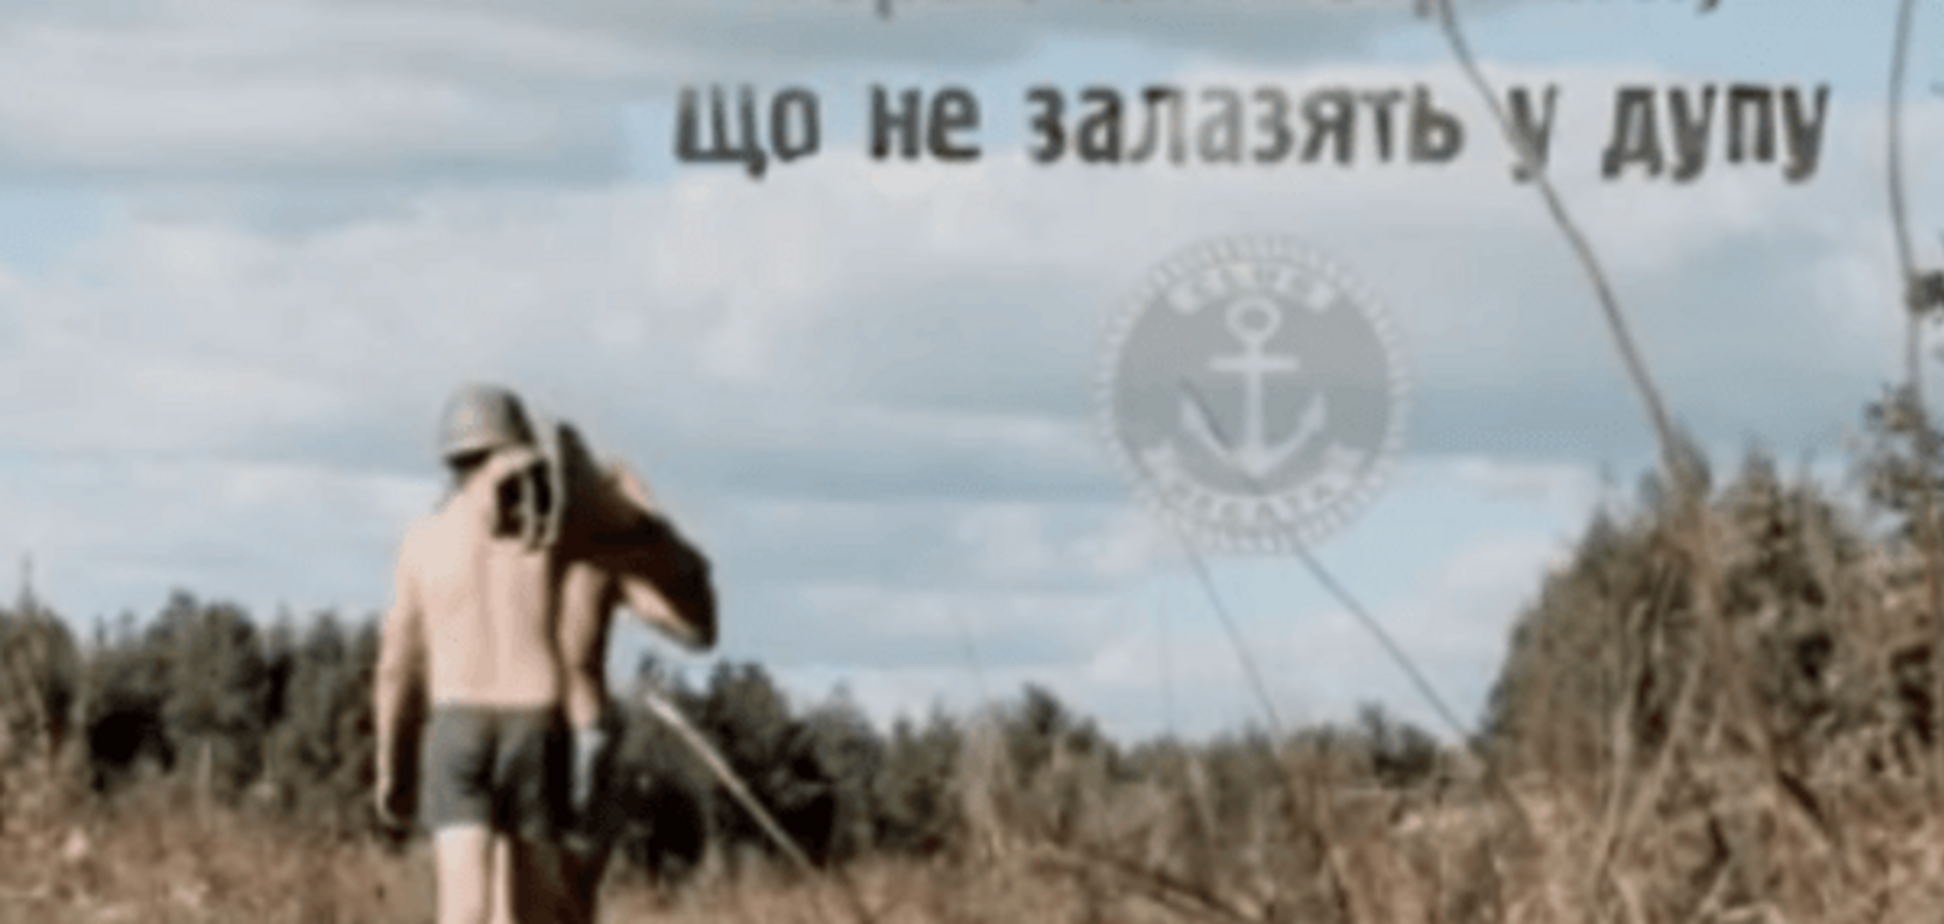 'Антистринги, що не залазять у д*пу': в Украине начали неимоверный проект о воинах-бизнесменах. Видеофакт